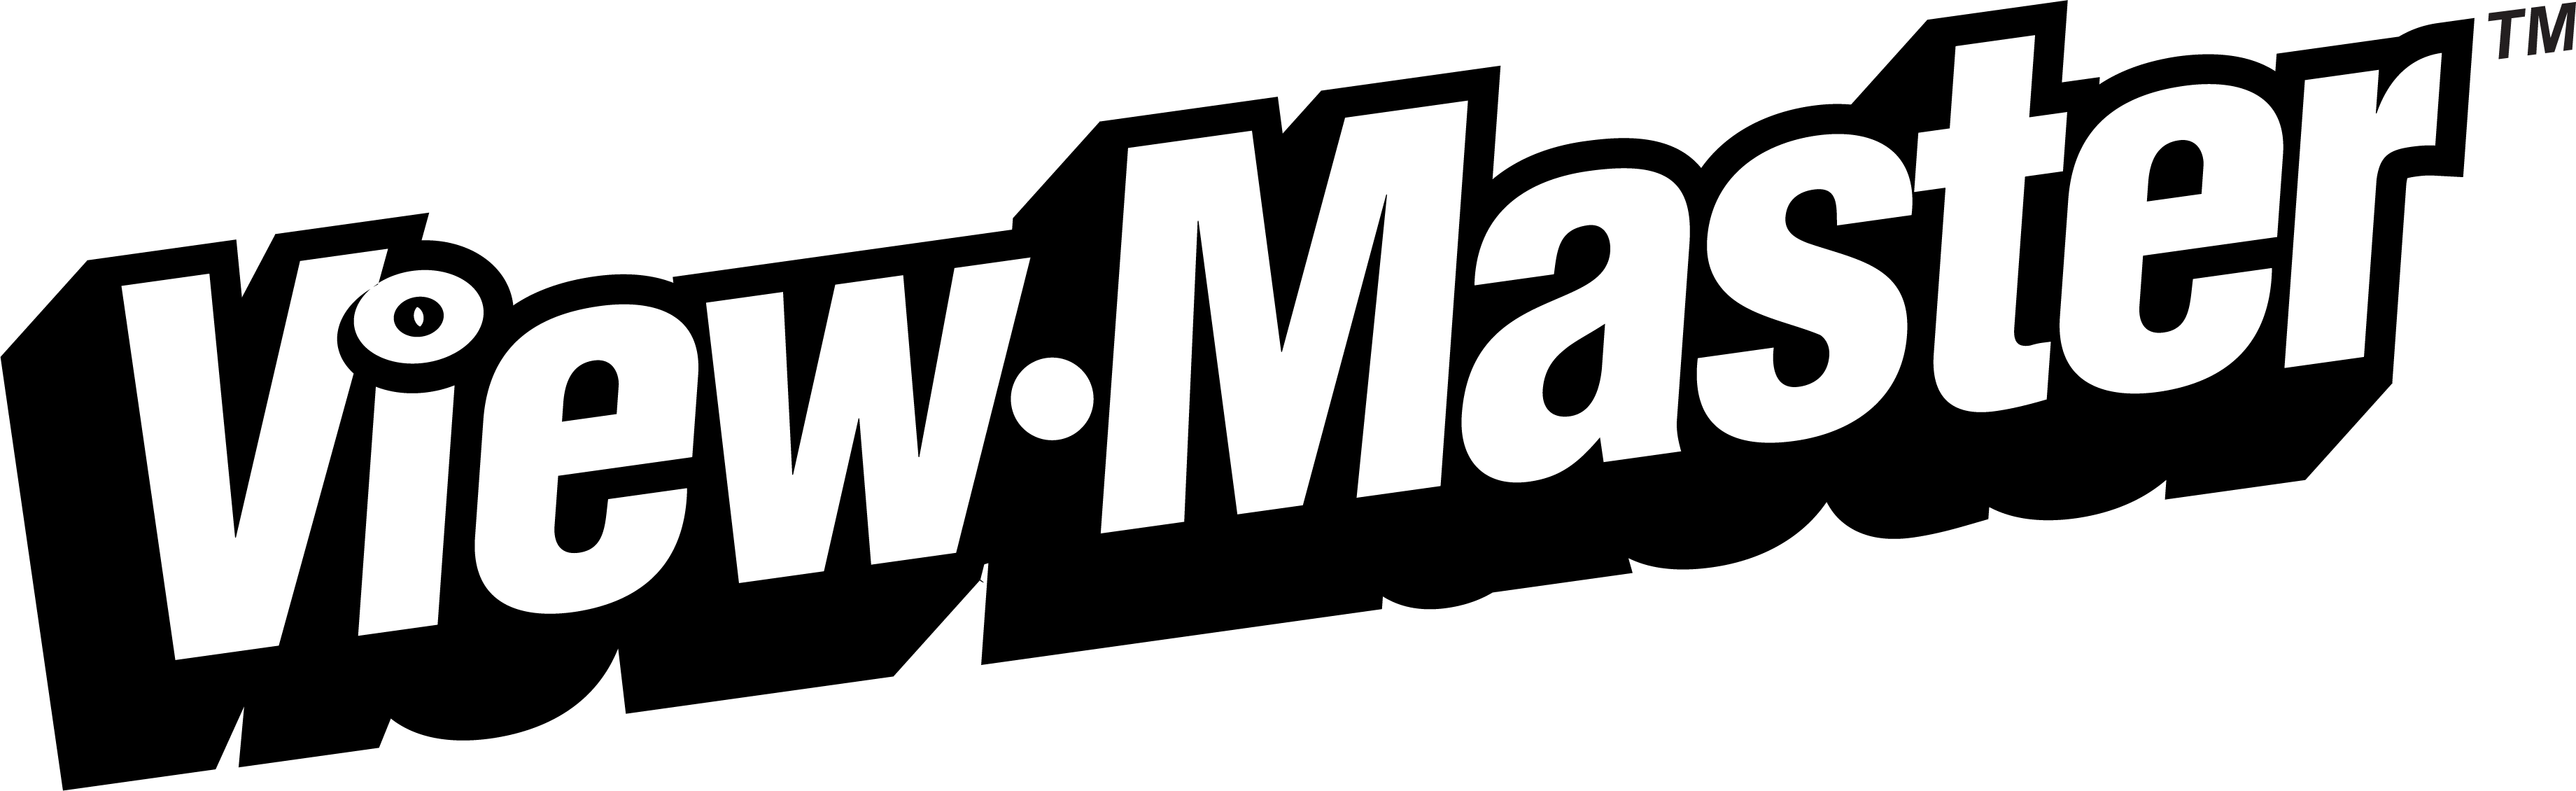 Viewmaster Logo